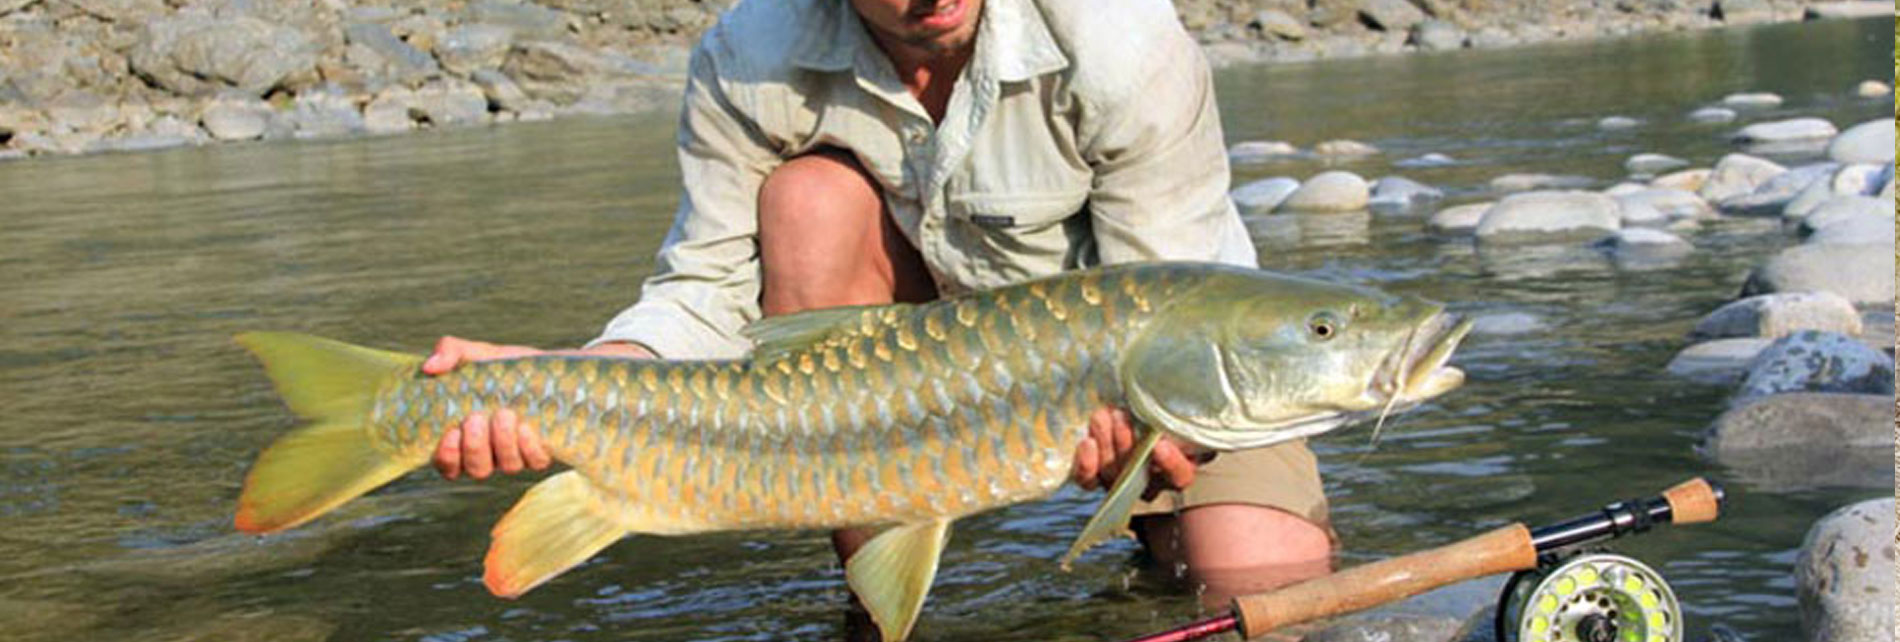 Jim Corbett Fish Catching Tour